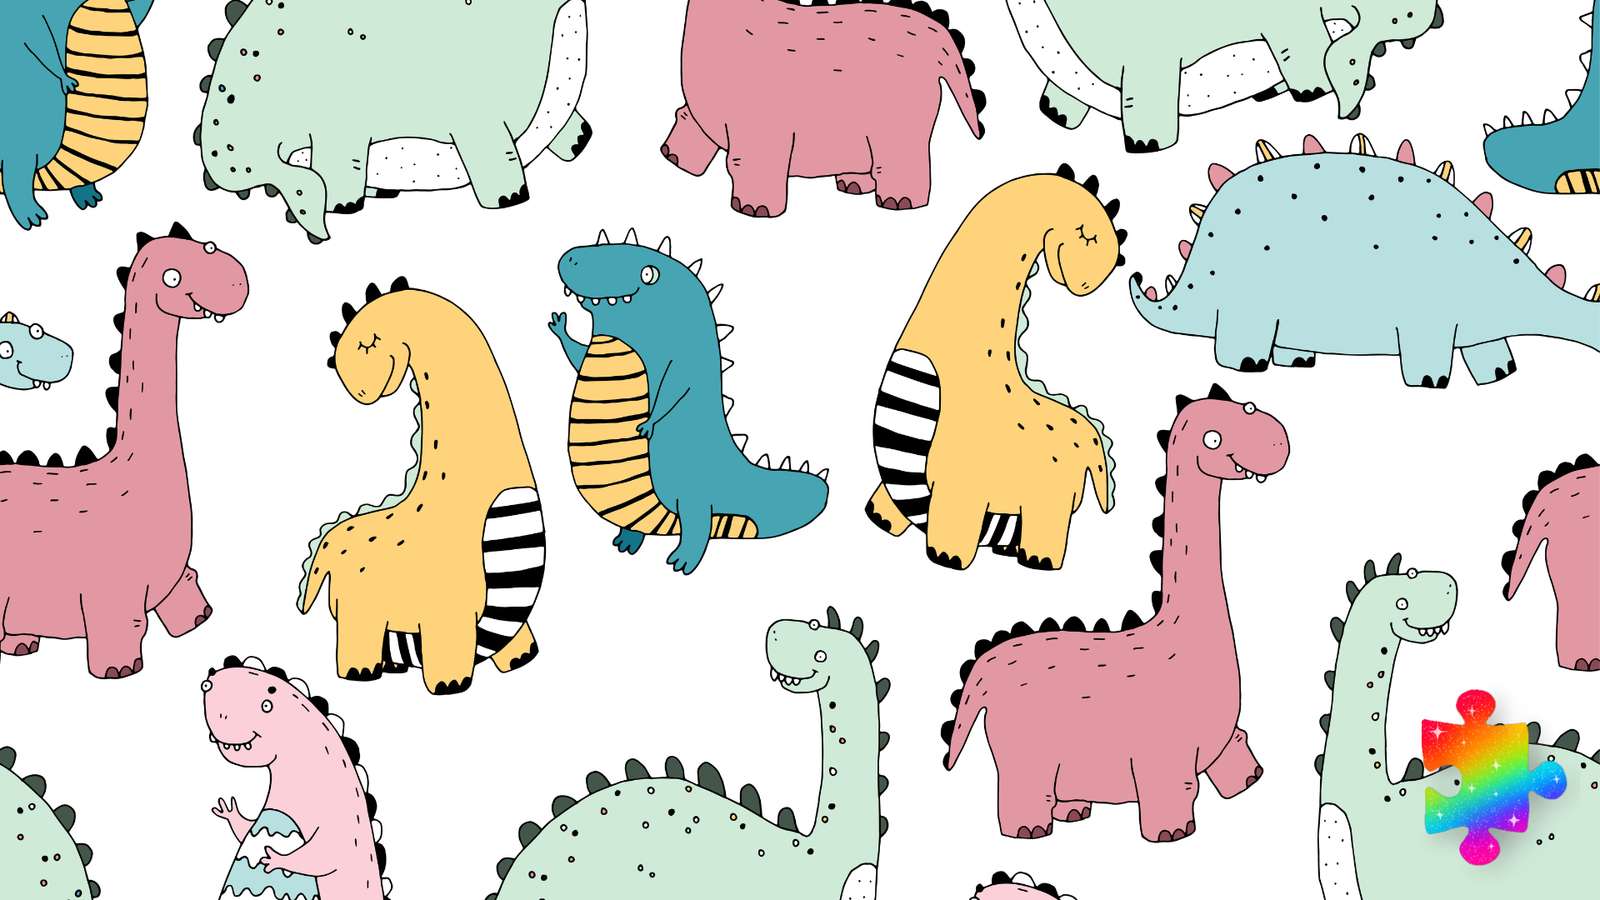 Dinosaurios coloridos rompecabezas en línea